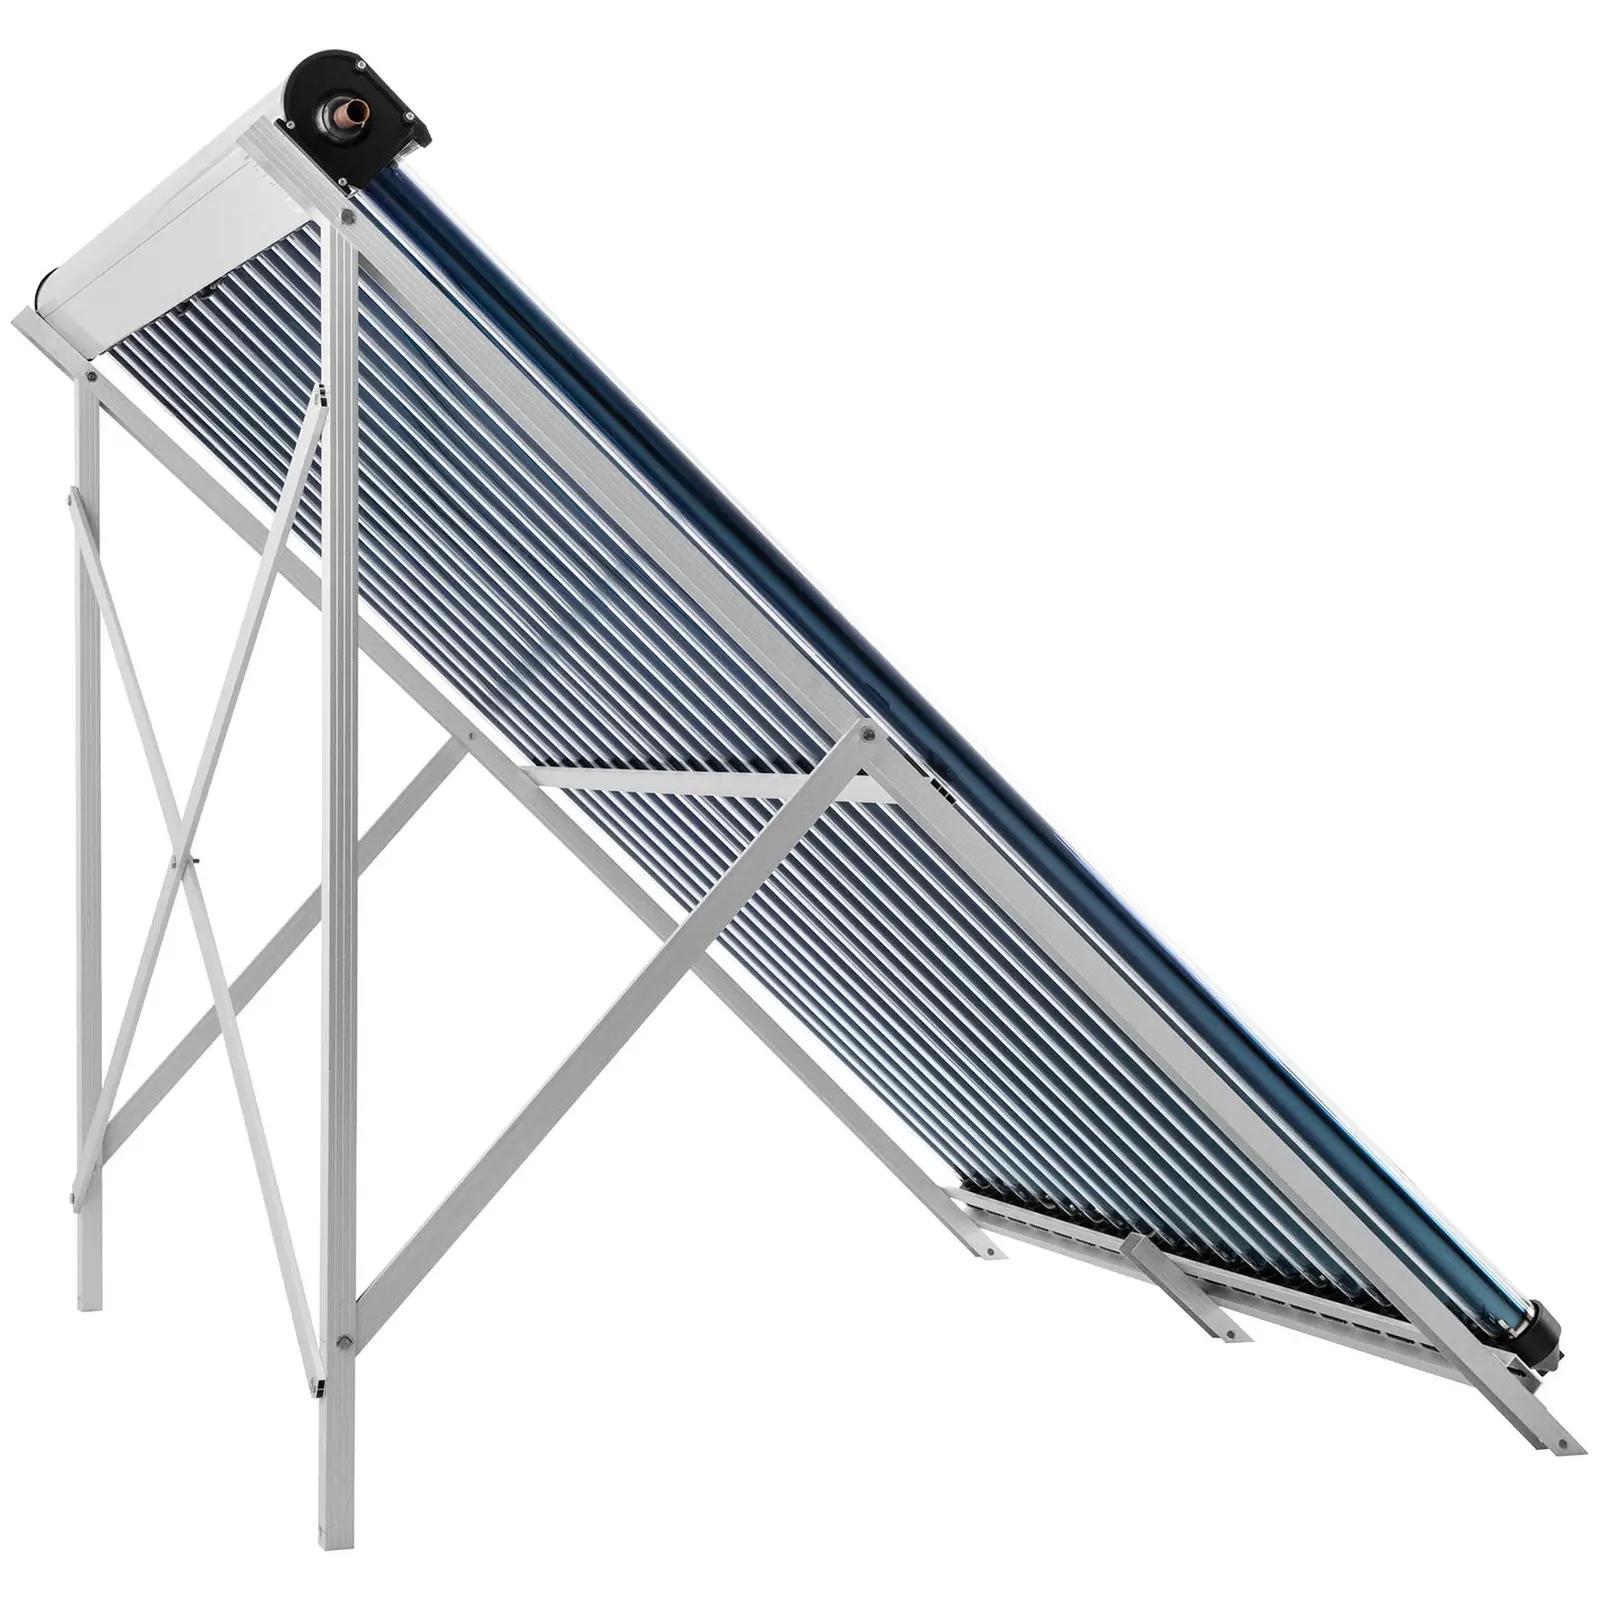 Colector solar de tubos - energía térmica solar - 20 tubos - 160 - 200 L - 1.6 m² - -45 - 90 °C